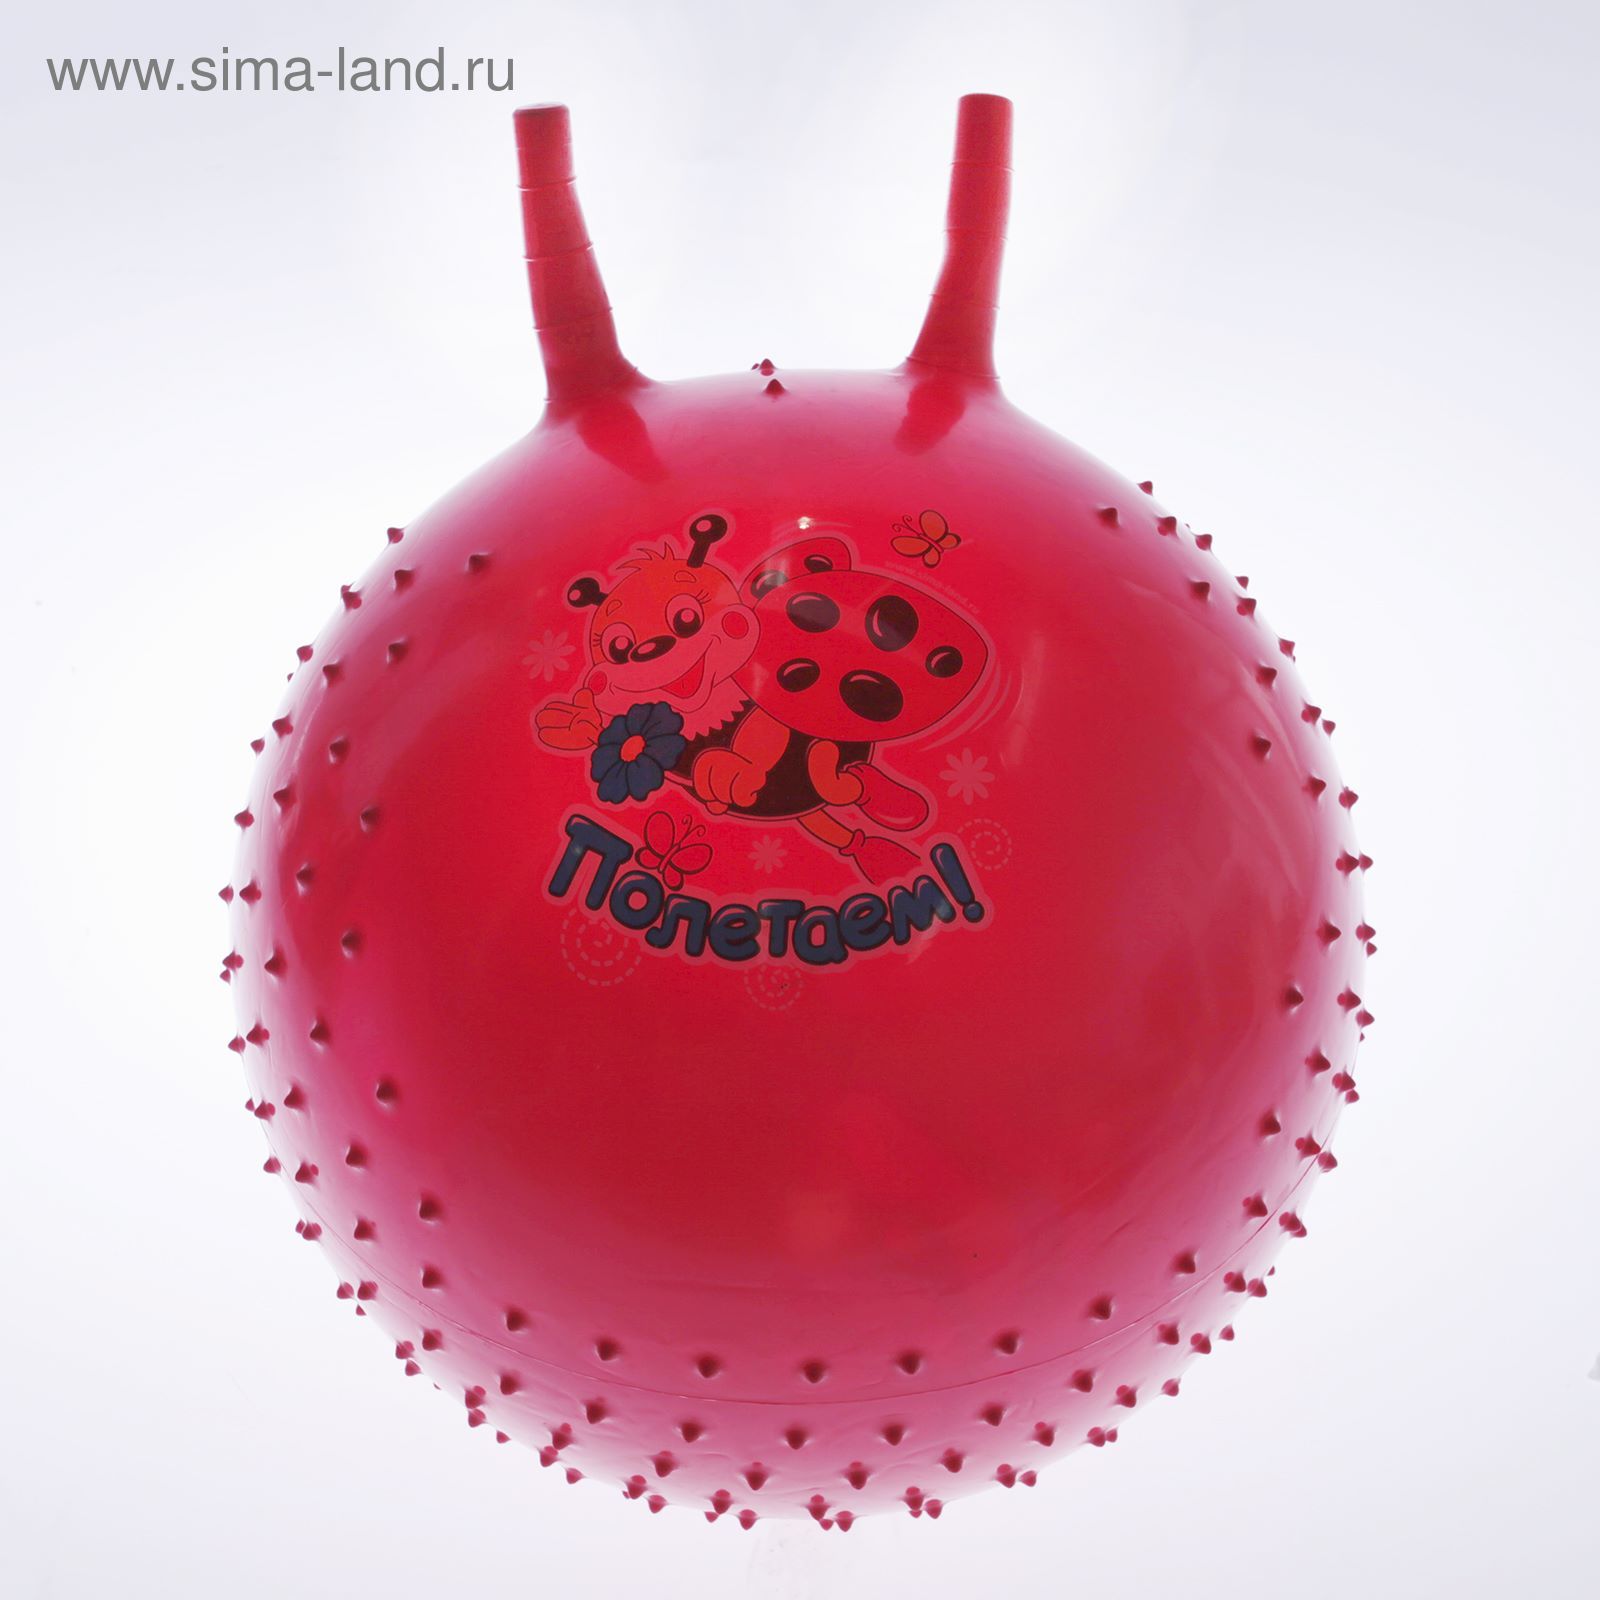 Мяч попрыгун с рожками массажный d=55 см, 420 гр, цвета микс